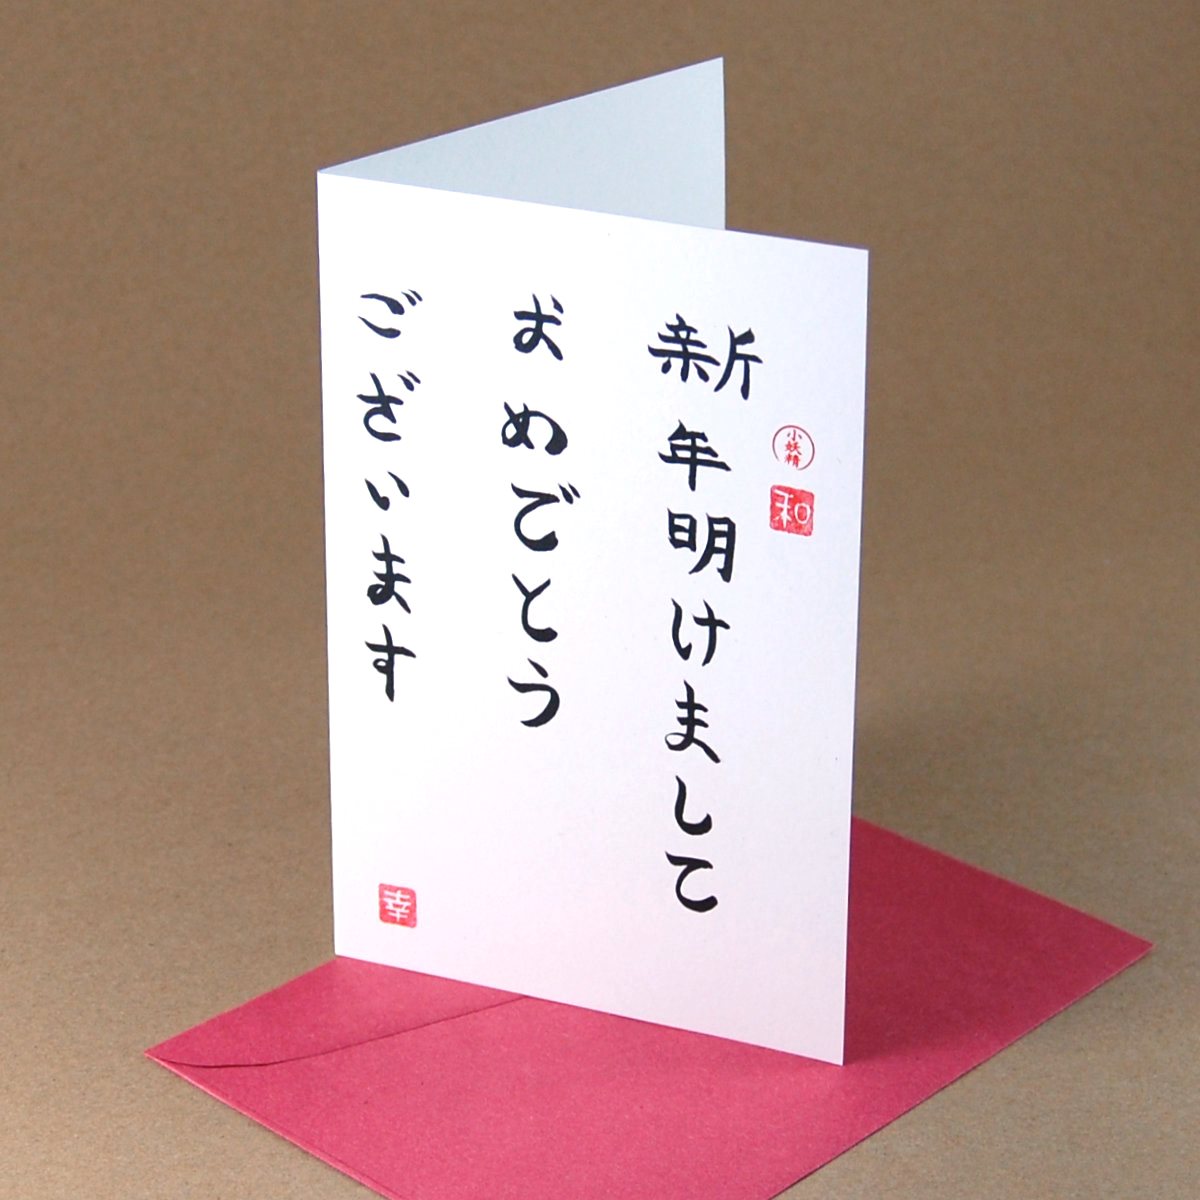 Shinnen akemashite omedetou gozaimasu, Neujahrskarten mit japanischen Schriftzeichen